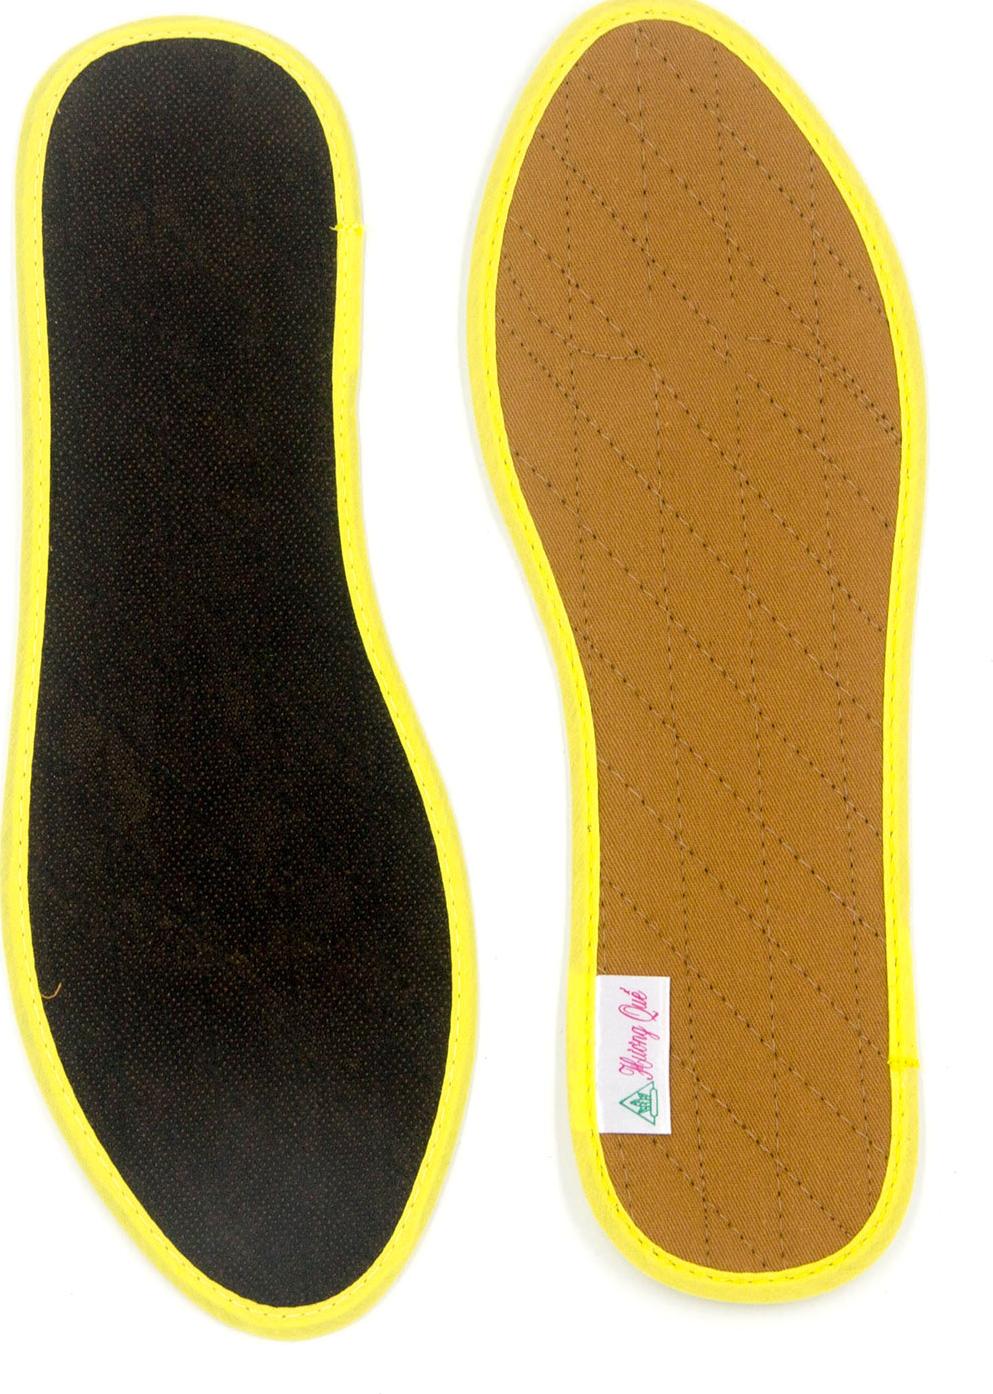 Lót giày vải cotton CI01